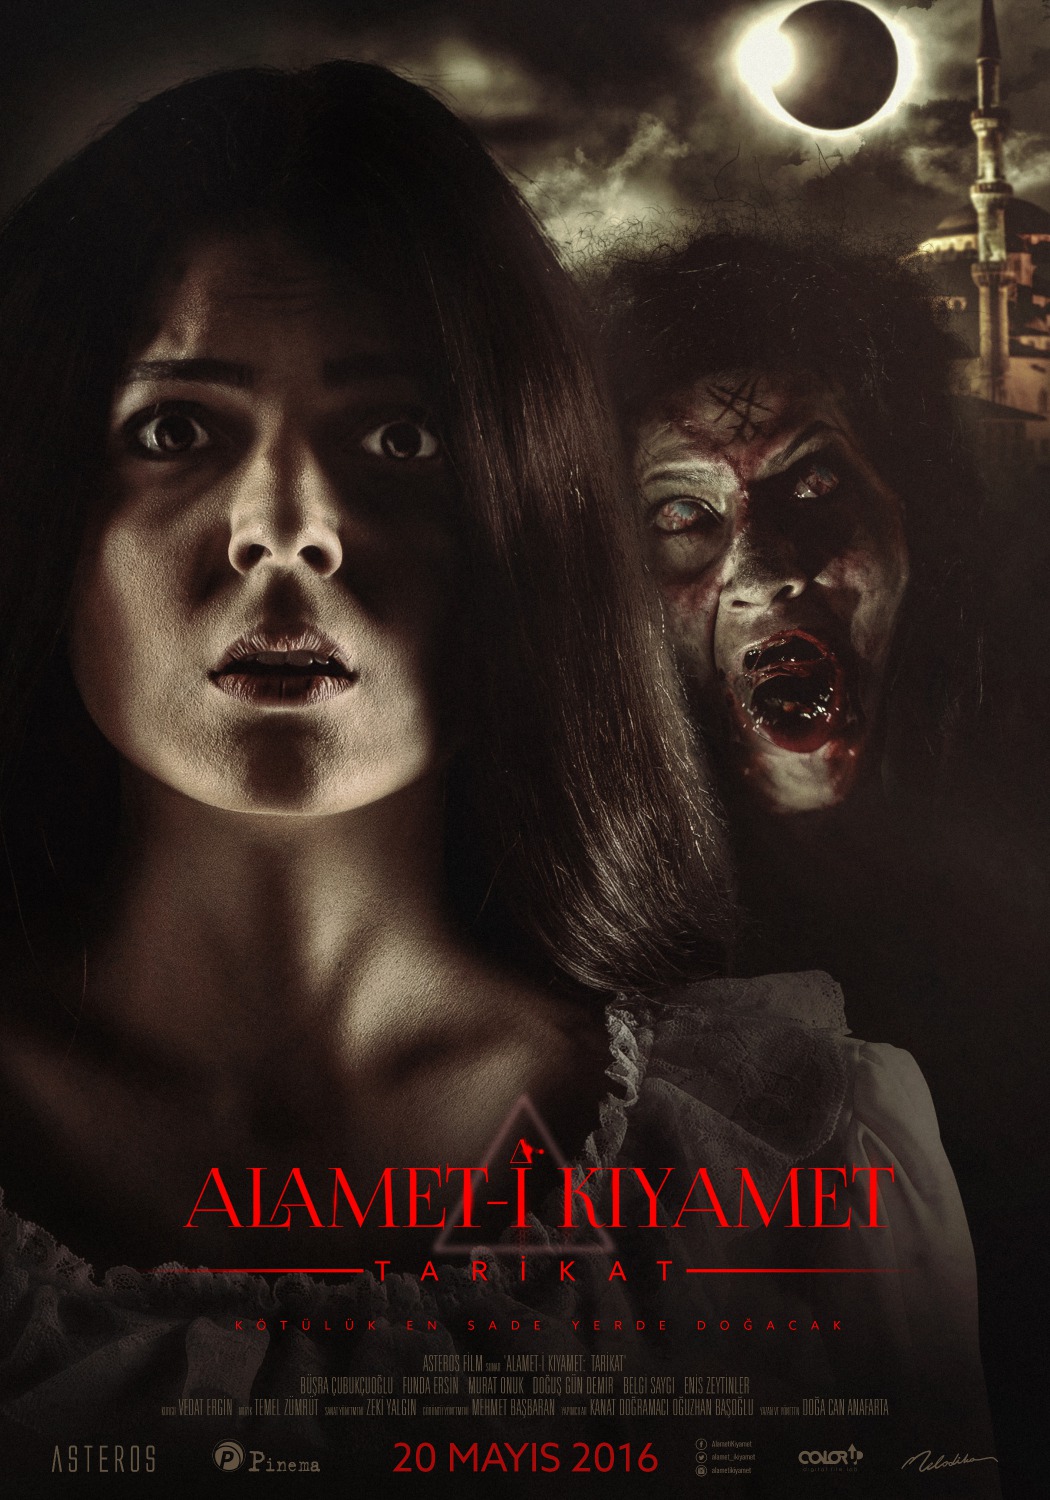 Extra Large Movie Poster Image for Alamet-i Kiyamet (#2 of 2)